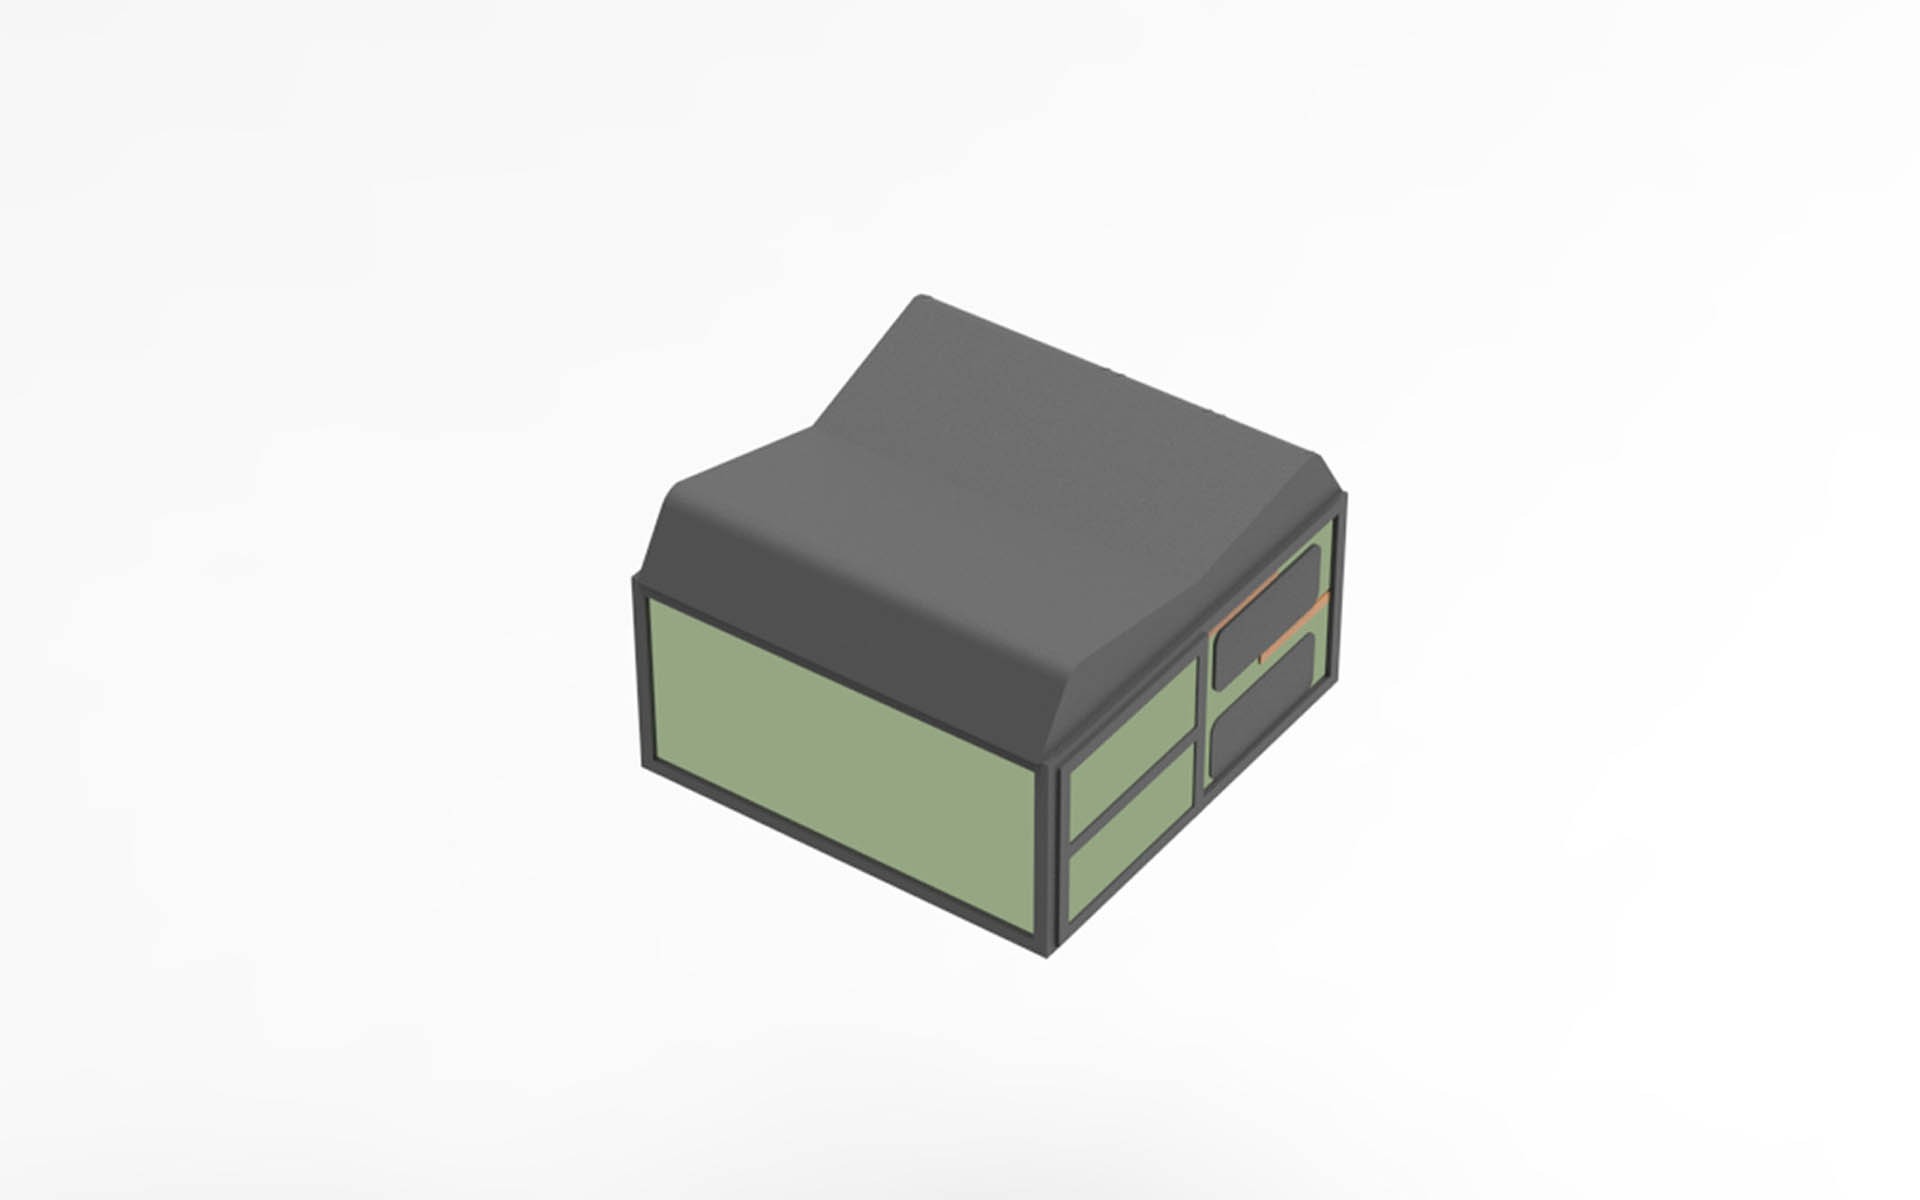 Alberts Cube Vito Concept - Caja